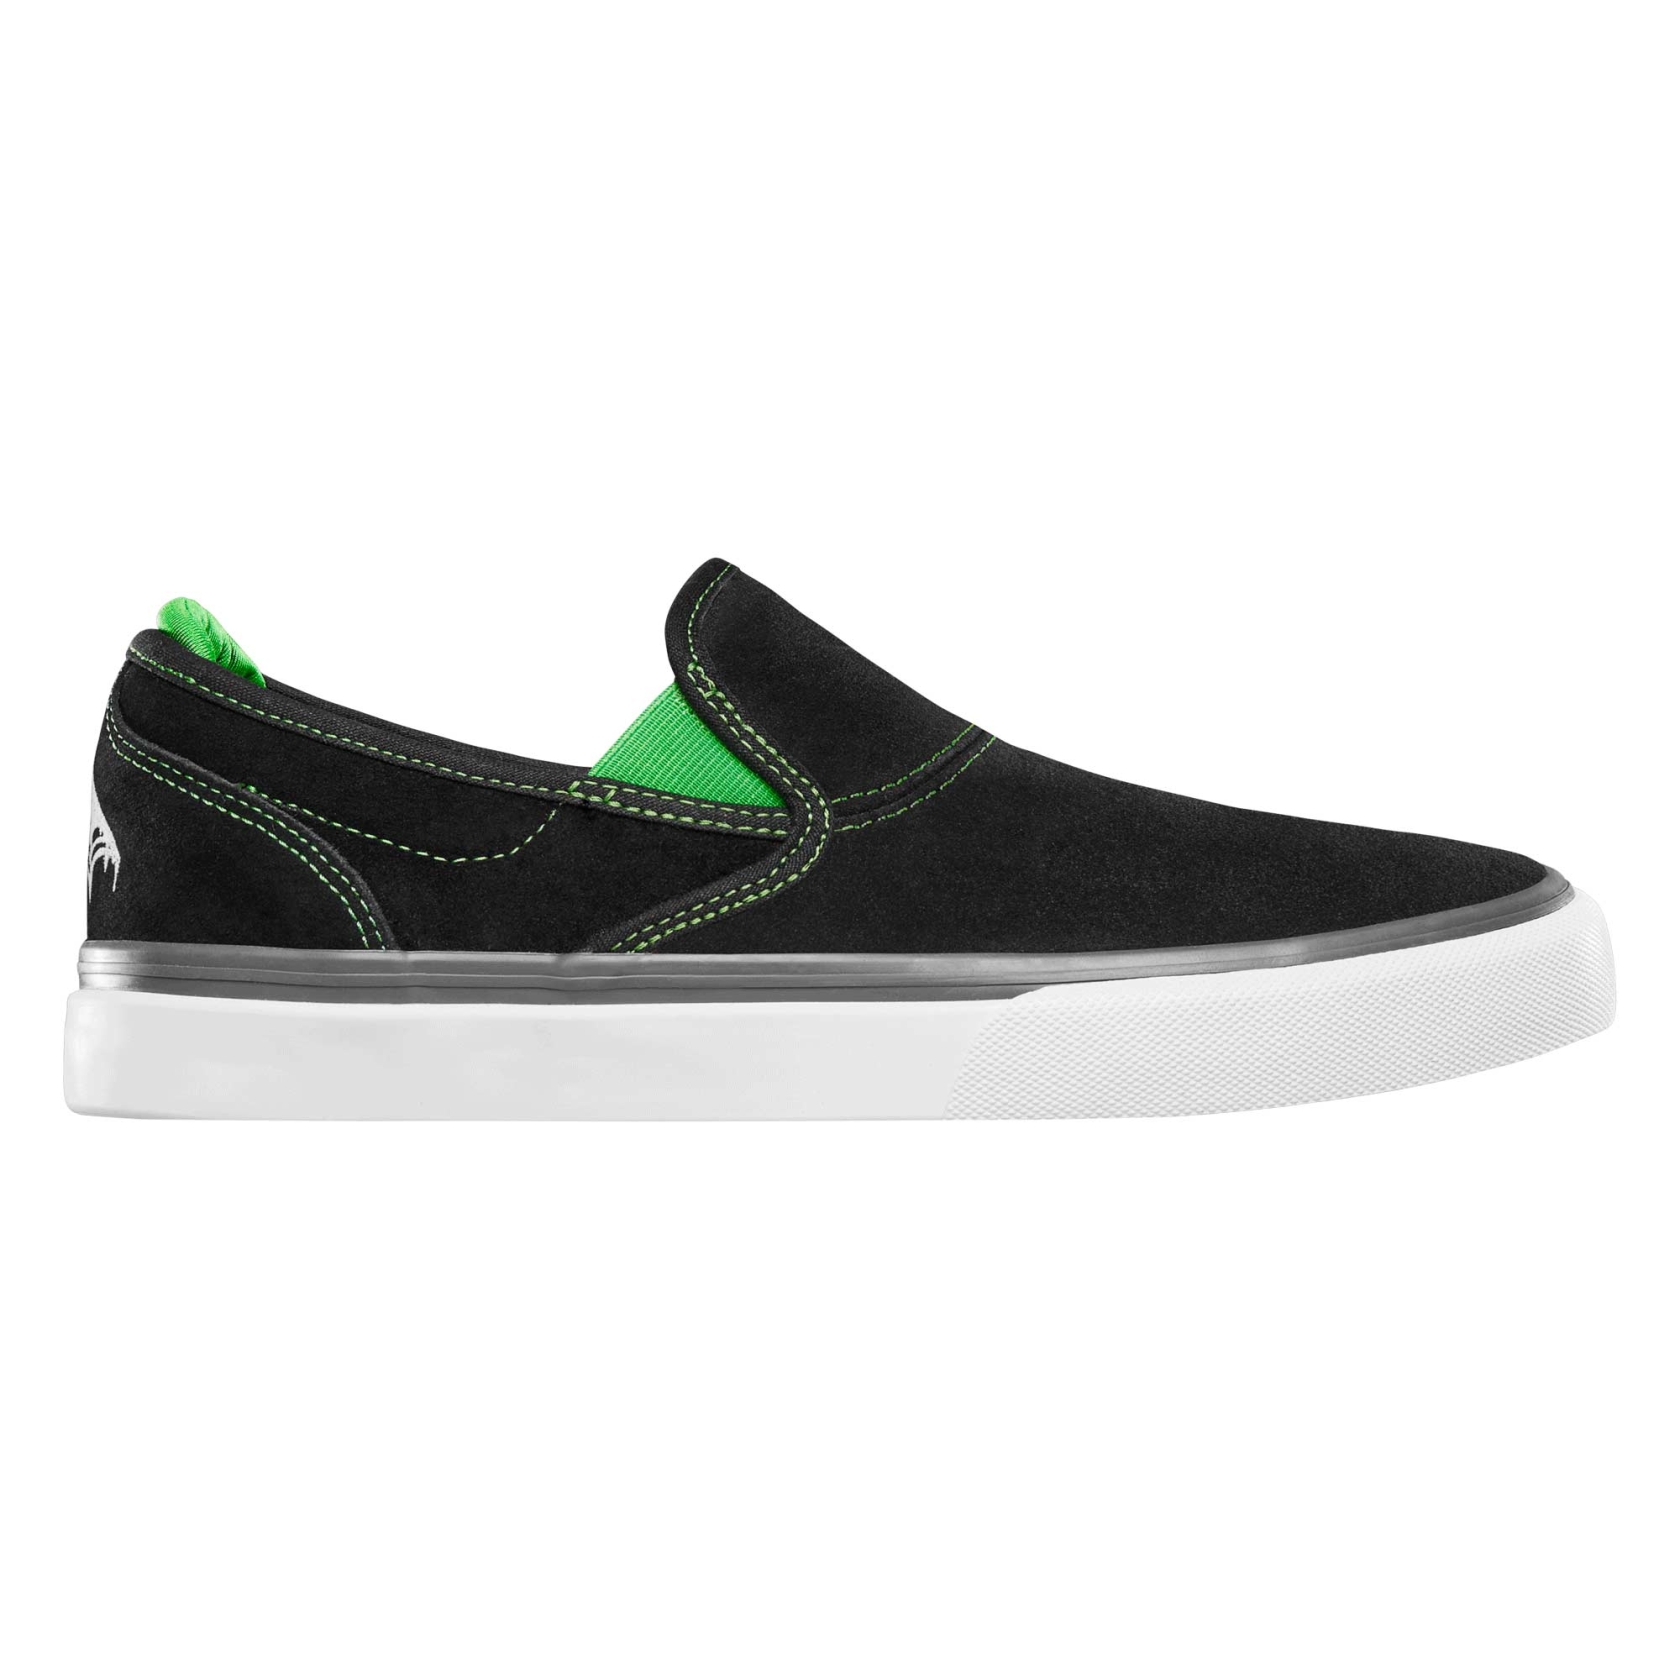 EMERICA Shoe WINO G6 SLIP-ON X CREATURE bla/gre black/green